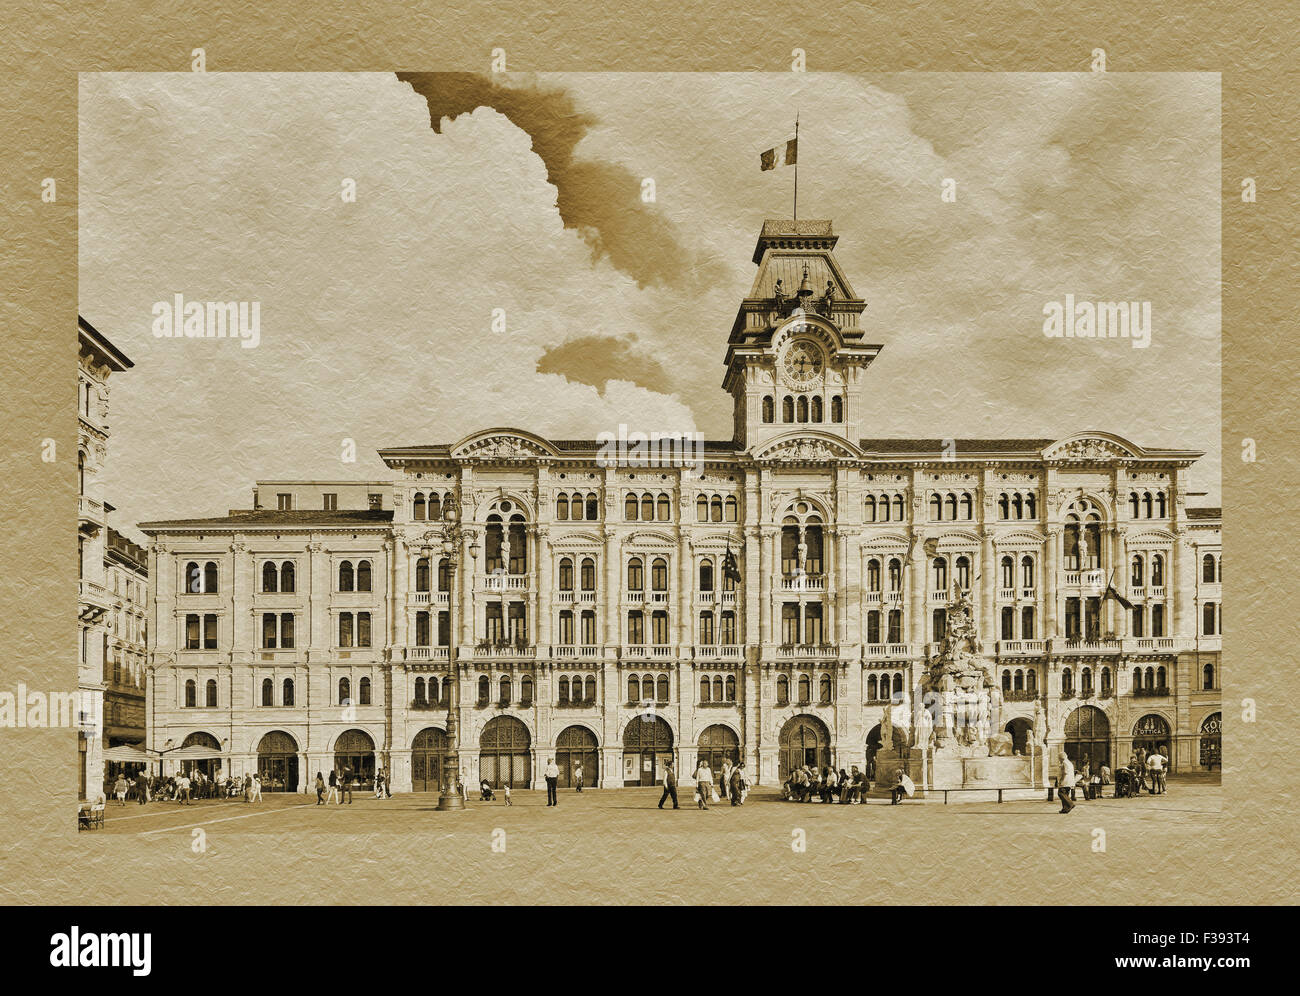 The town hall, Palazzo del Muniucipio at Piazza Unita d'Italia, Trieste, Friuli-Venezia Giulia, Italy, Europe Stock Photo